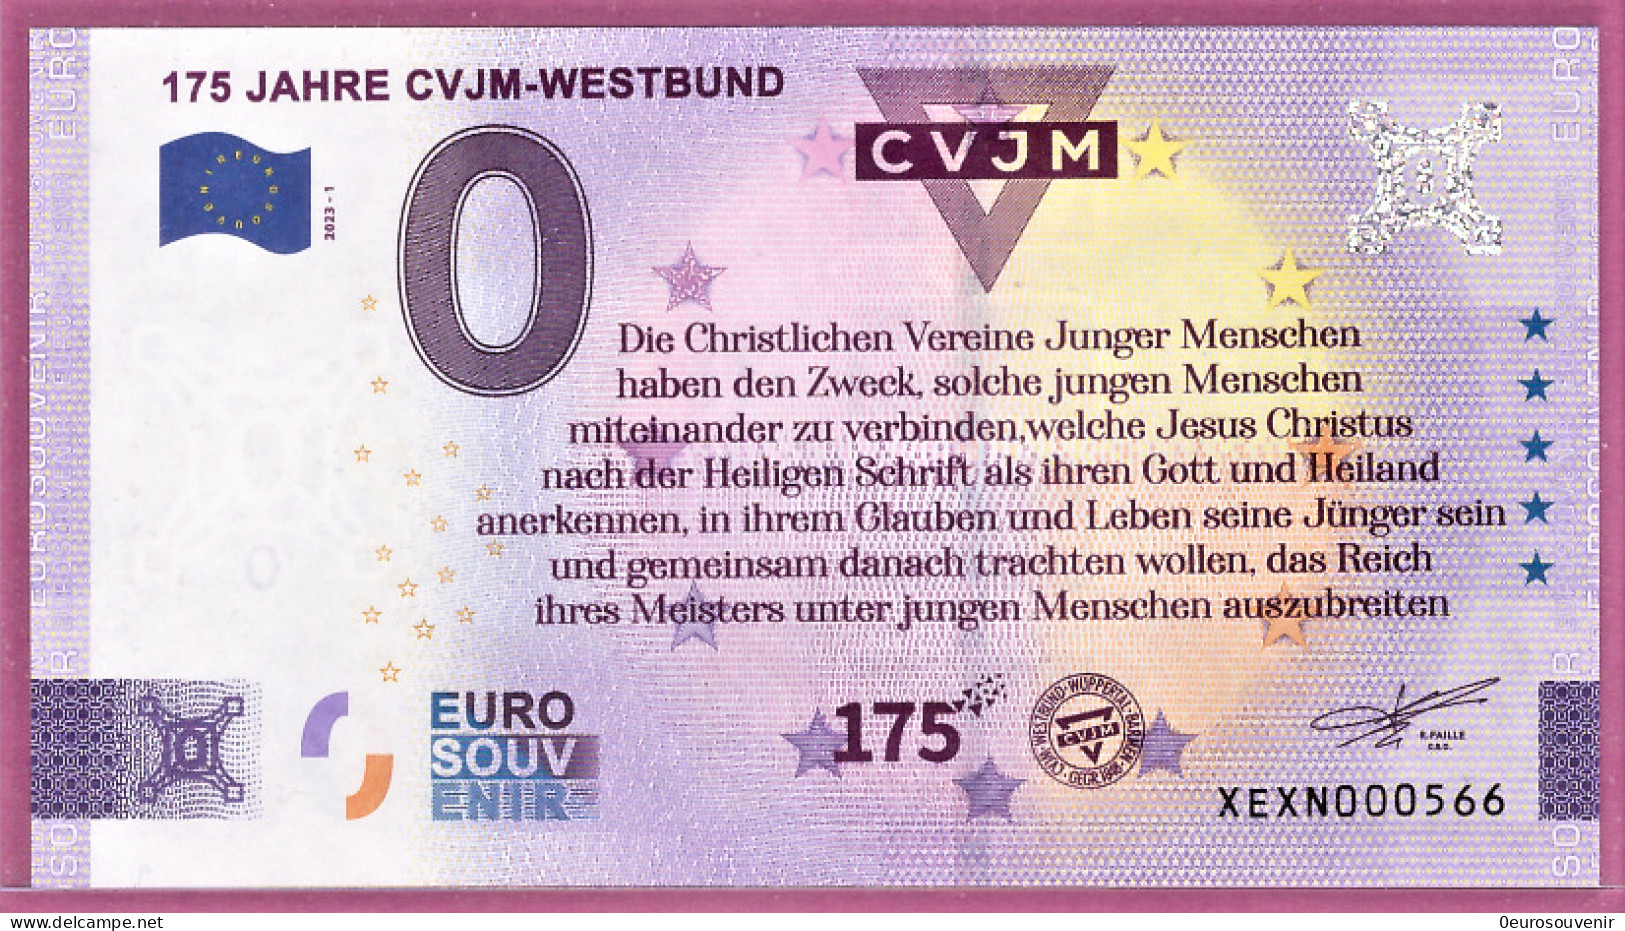 0-Euro XEXN 2023-1 175 JAHRE CVJM-WESTBUND SPENDENSCHEIN - Prove Private